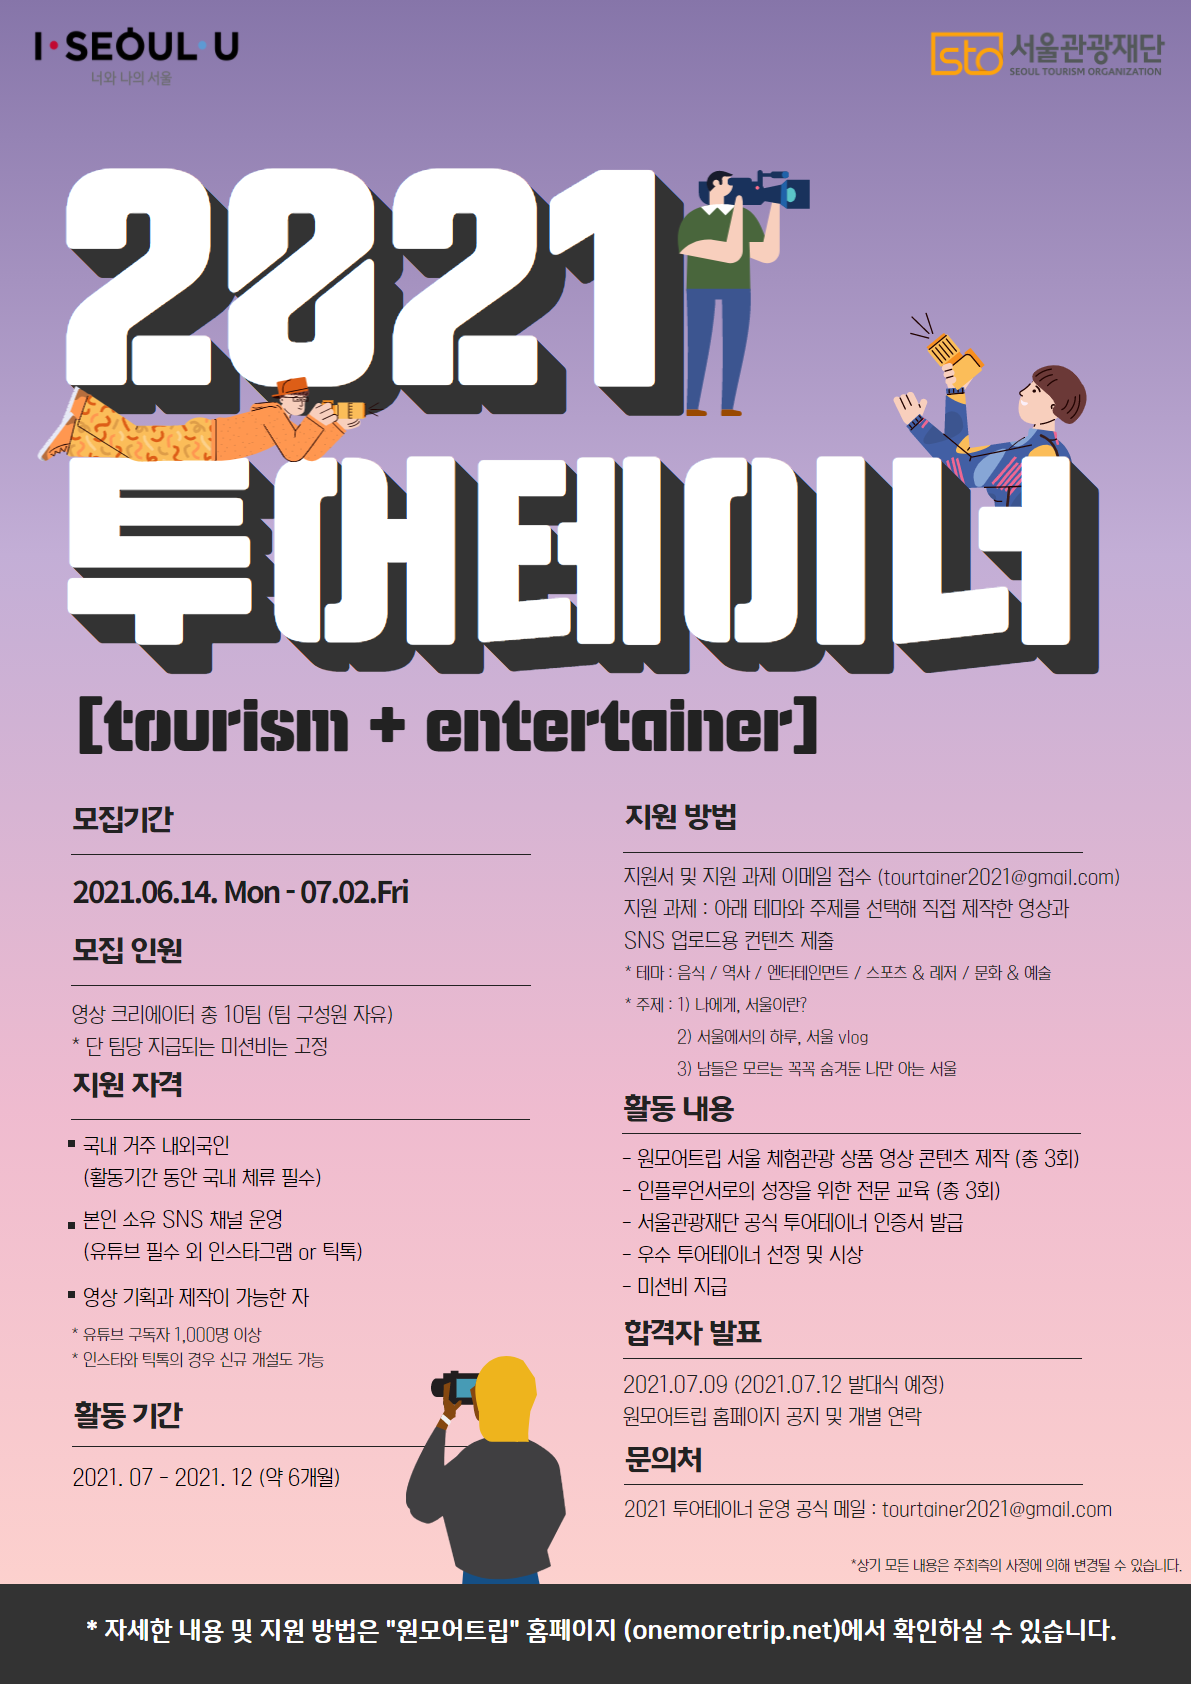 서울관광재단 영상 크리에이터 "2021투어테이너" 모집